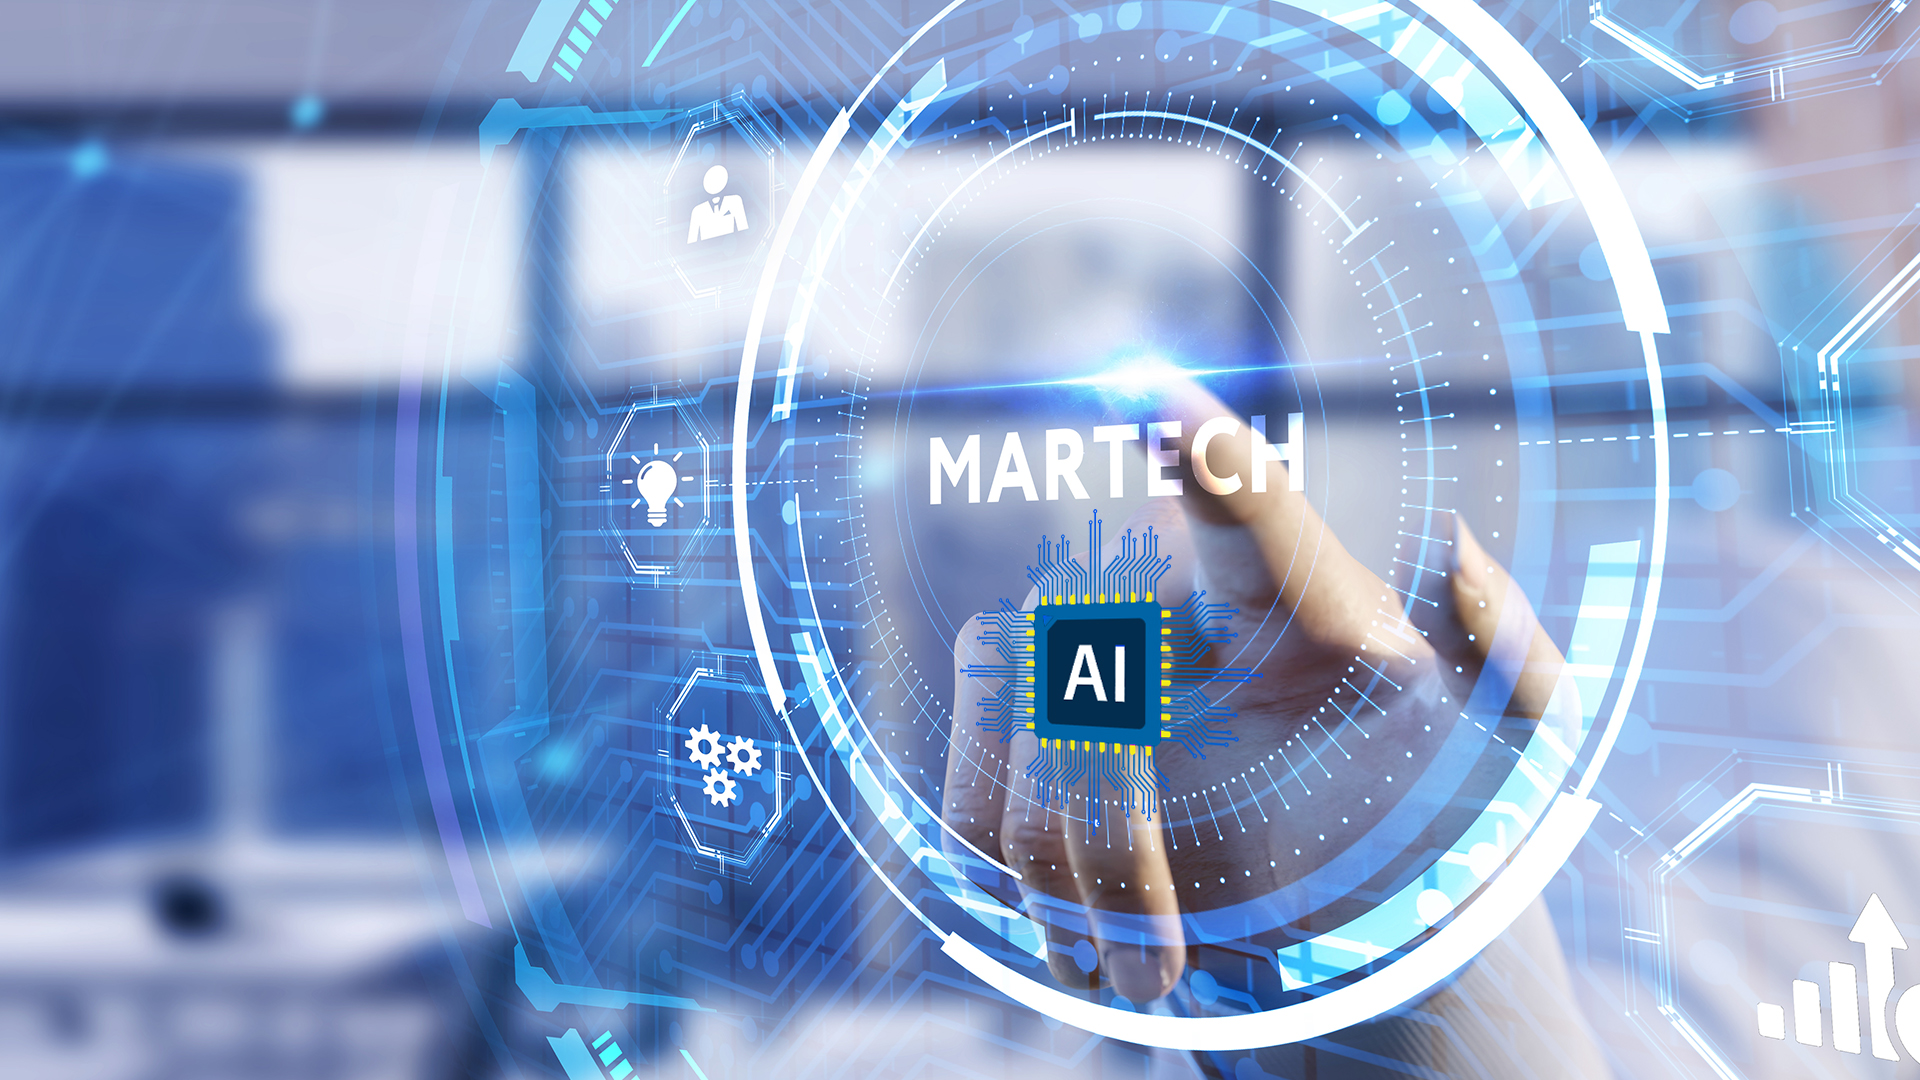 Die Revolution des Marketings: MarTech und Artificial Intelligence